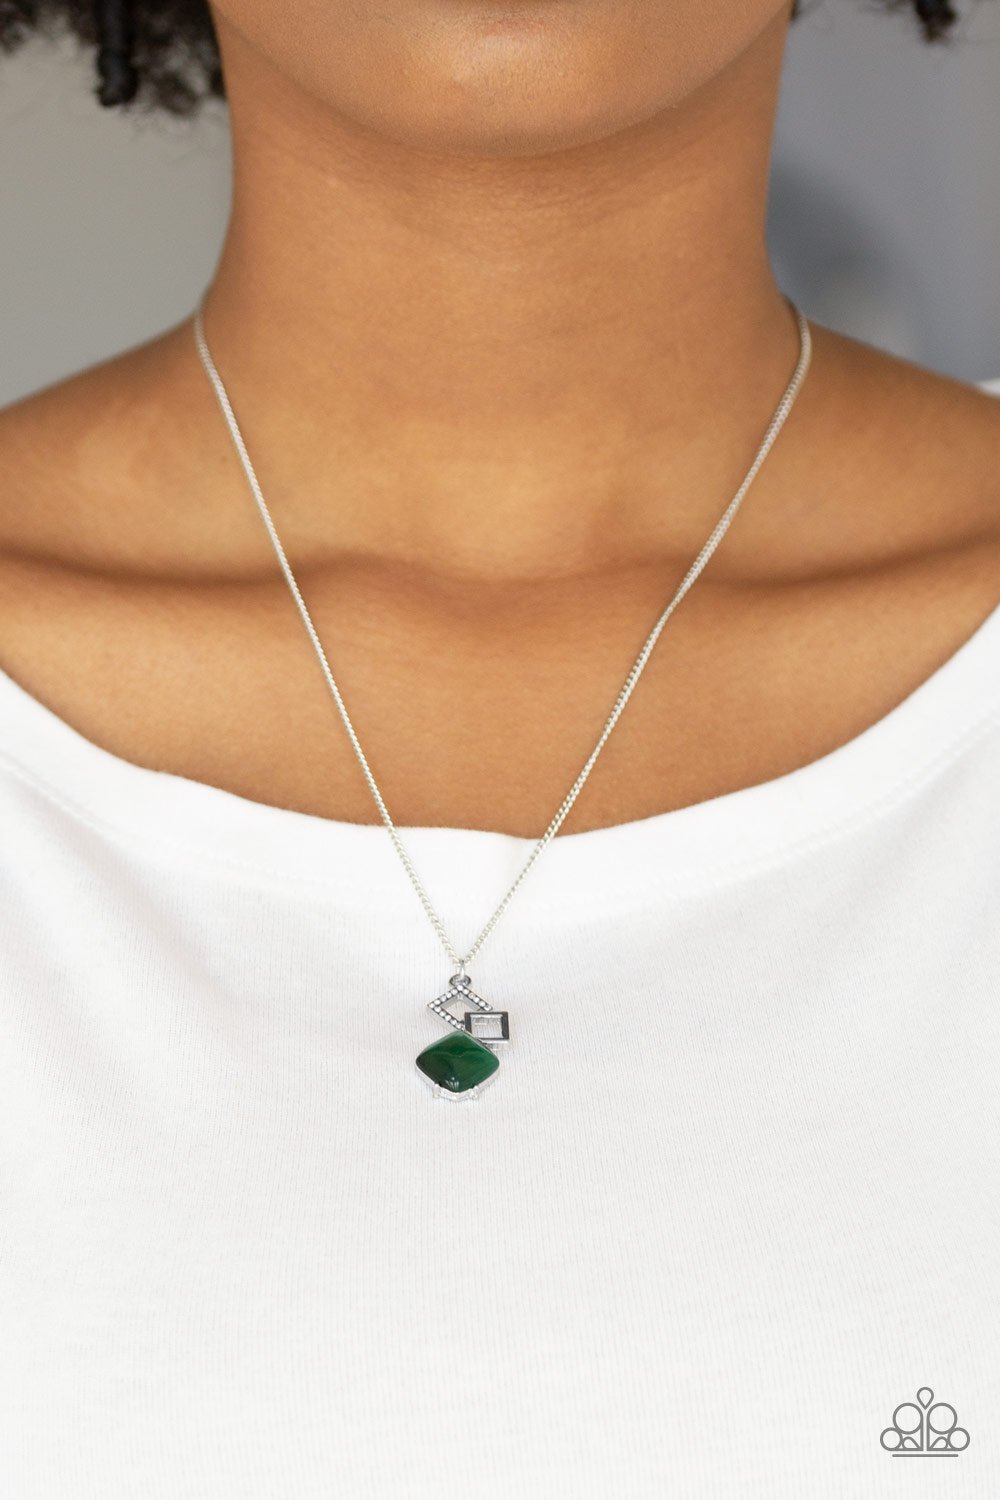 Stylishly Square-green-Paparazzi necklace